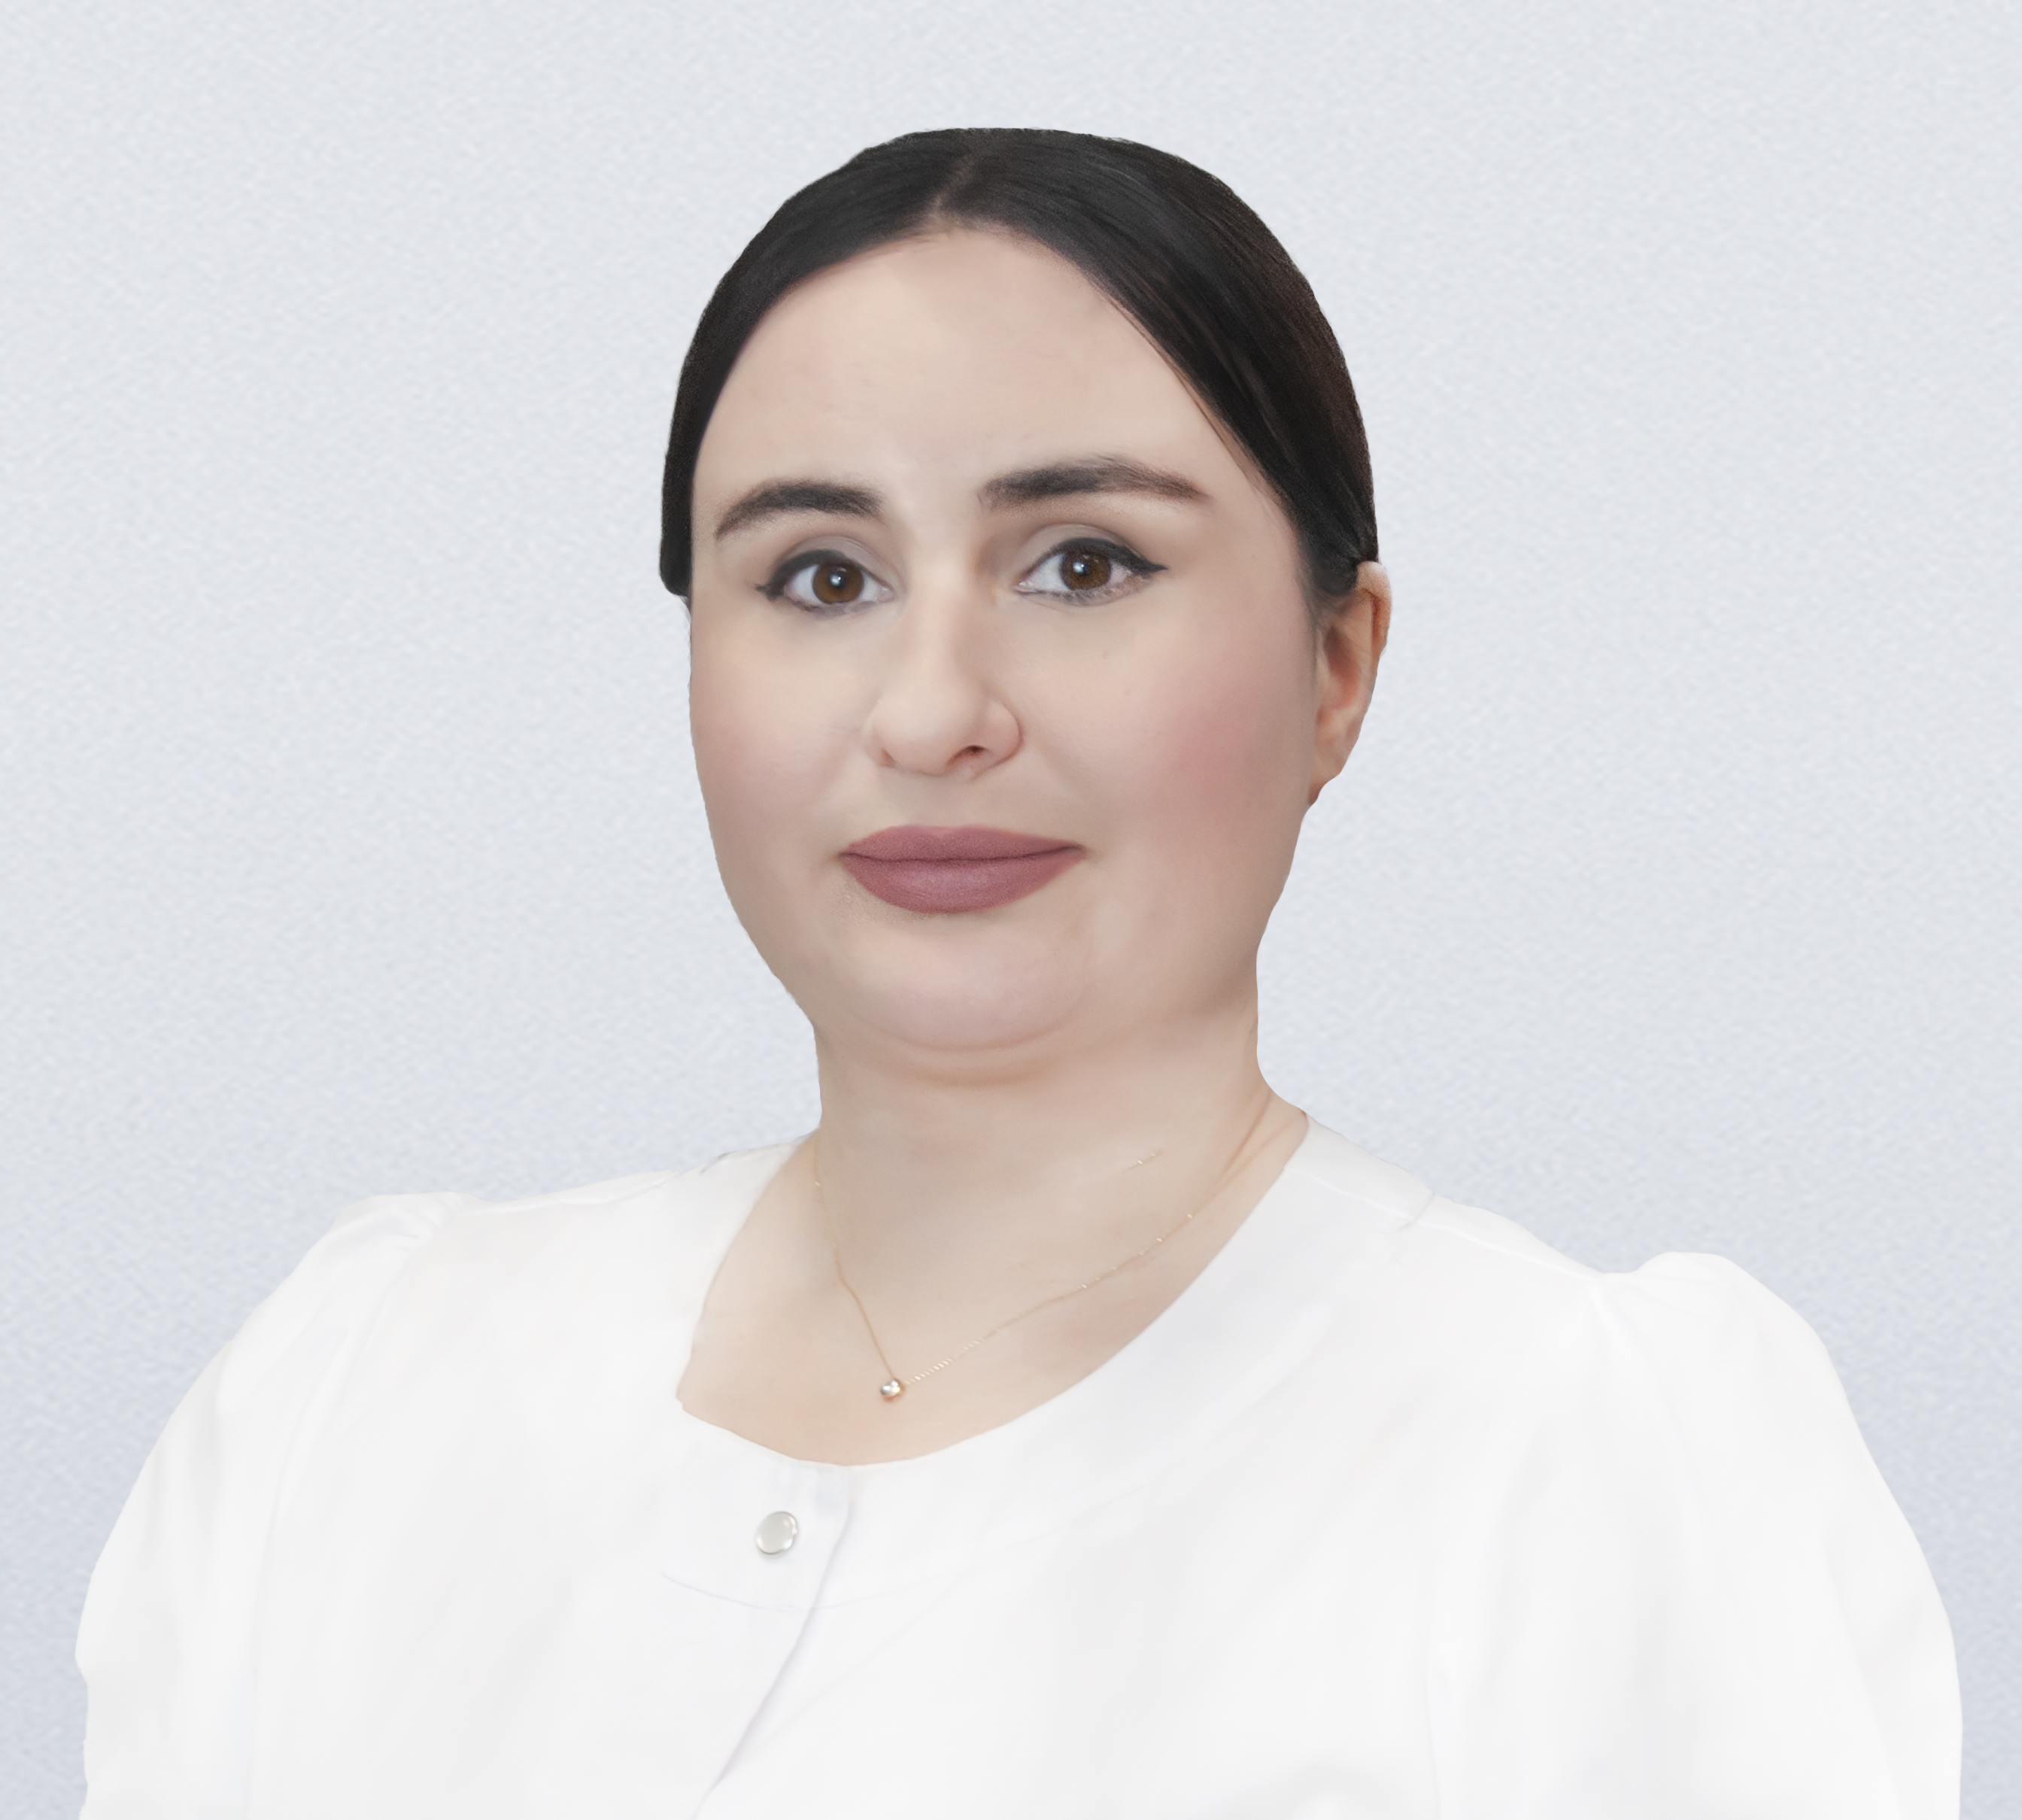 Нармания Ирма Георгиевна , врач-акушер-гинеколог, хирург, врач ультразвуковой диагностики